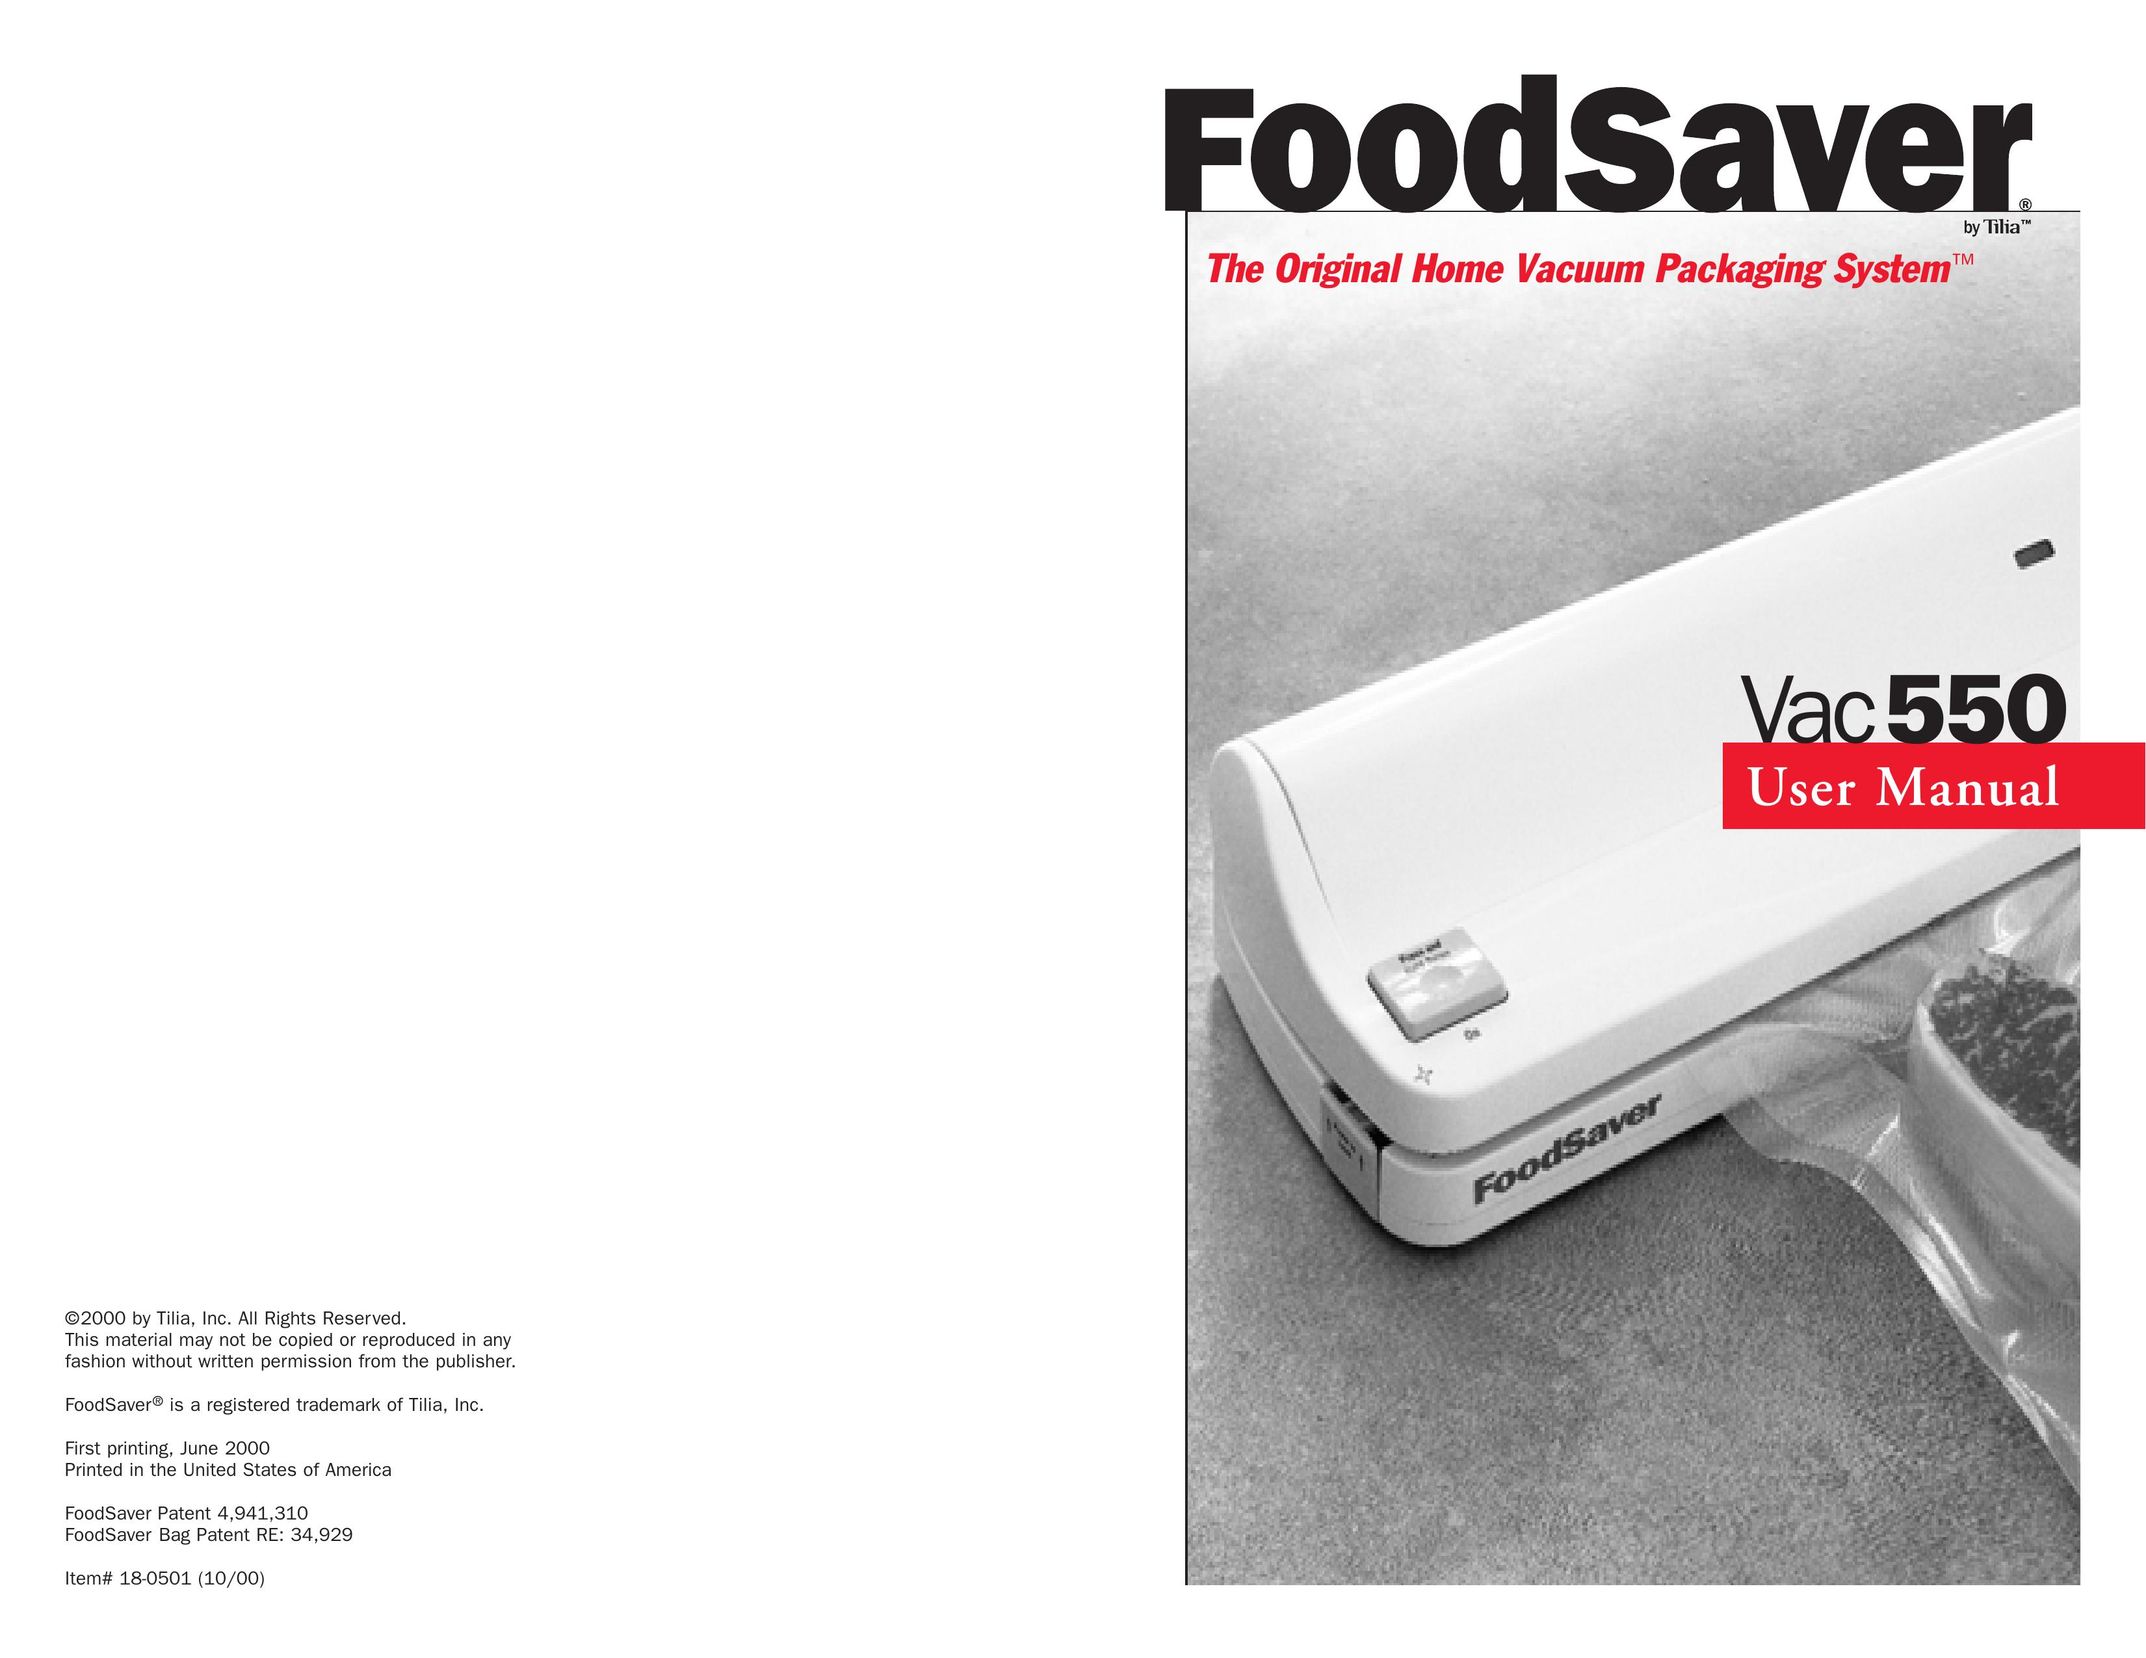 FoodSaver VAC550 Food Saver User Manual